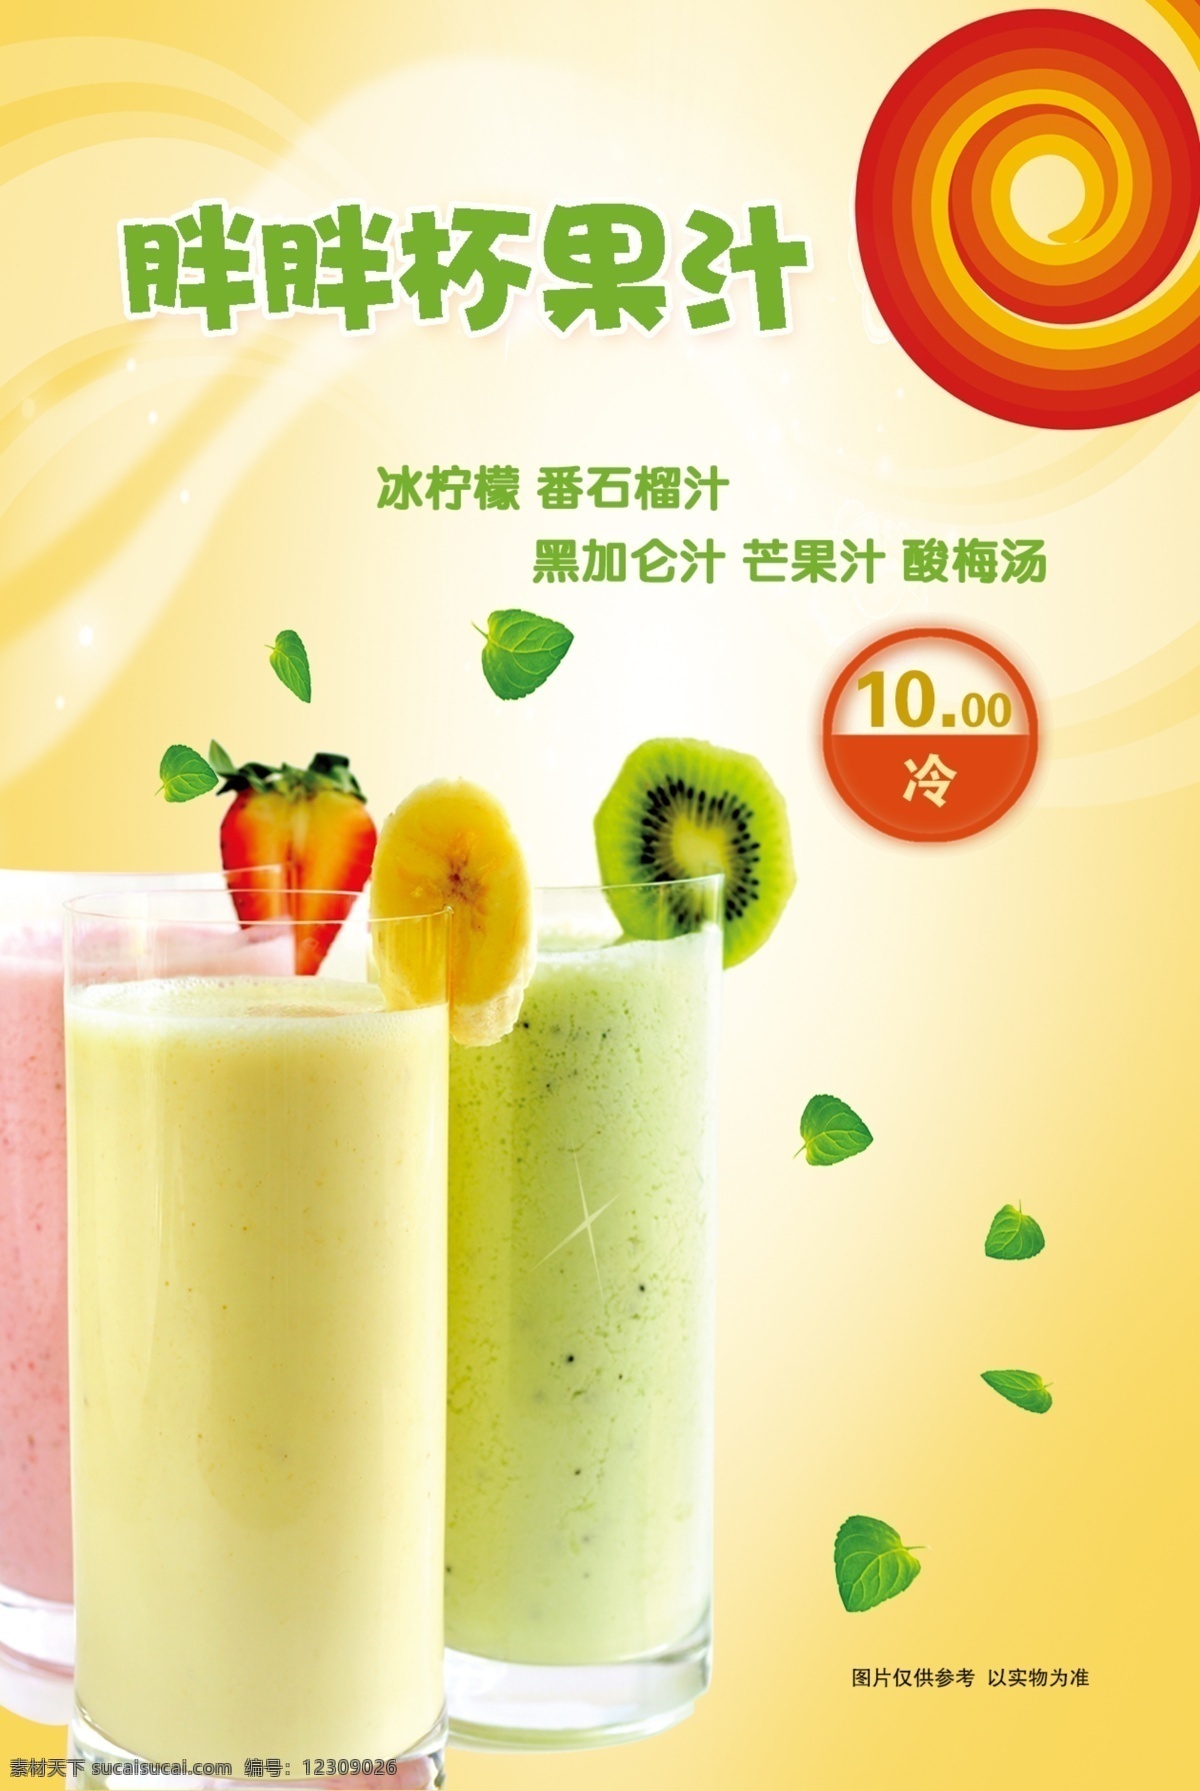 胖胖杯果汁 灯片 价格图片 冰柠檬 番石榴汁 我的东东 dm宣传单